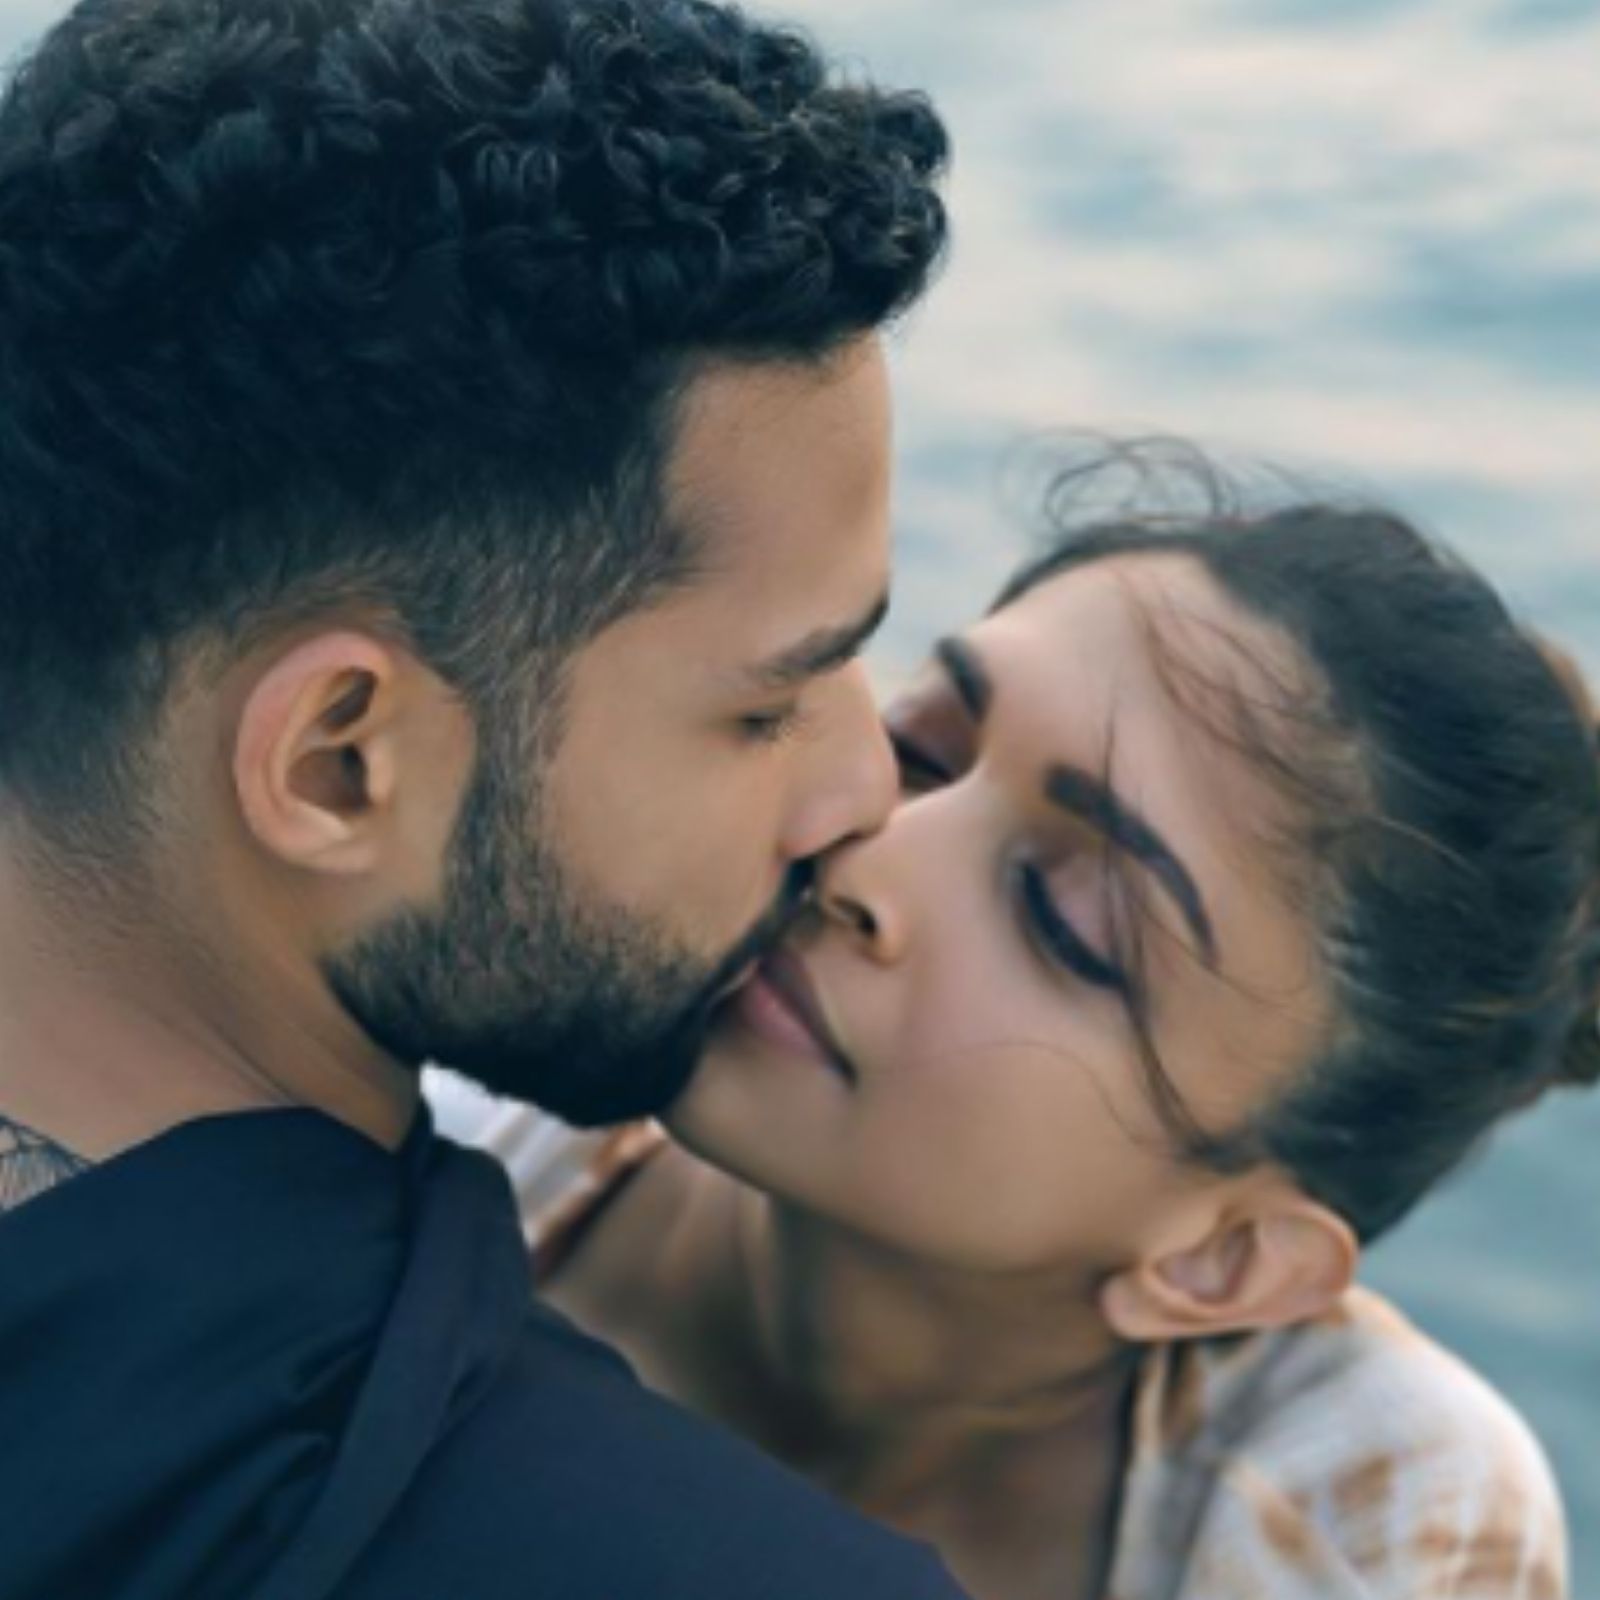 Siddhant Chaturvedi uncle asked question on kissing seen with Deepika  Padukone says sparsh bhayel ba ya na in Gehraiyaan ss - Gehraiyaan:  सिद्धांत चतुर्वेदी के चाचा ने जब दीपिका पादुकोण के साथ Kiss पर पूछा था  सवाल, 'स्पर्श भईल बा या न' – News18 हिंदी